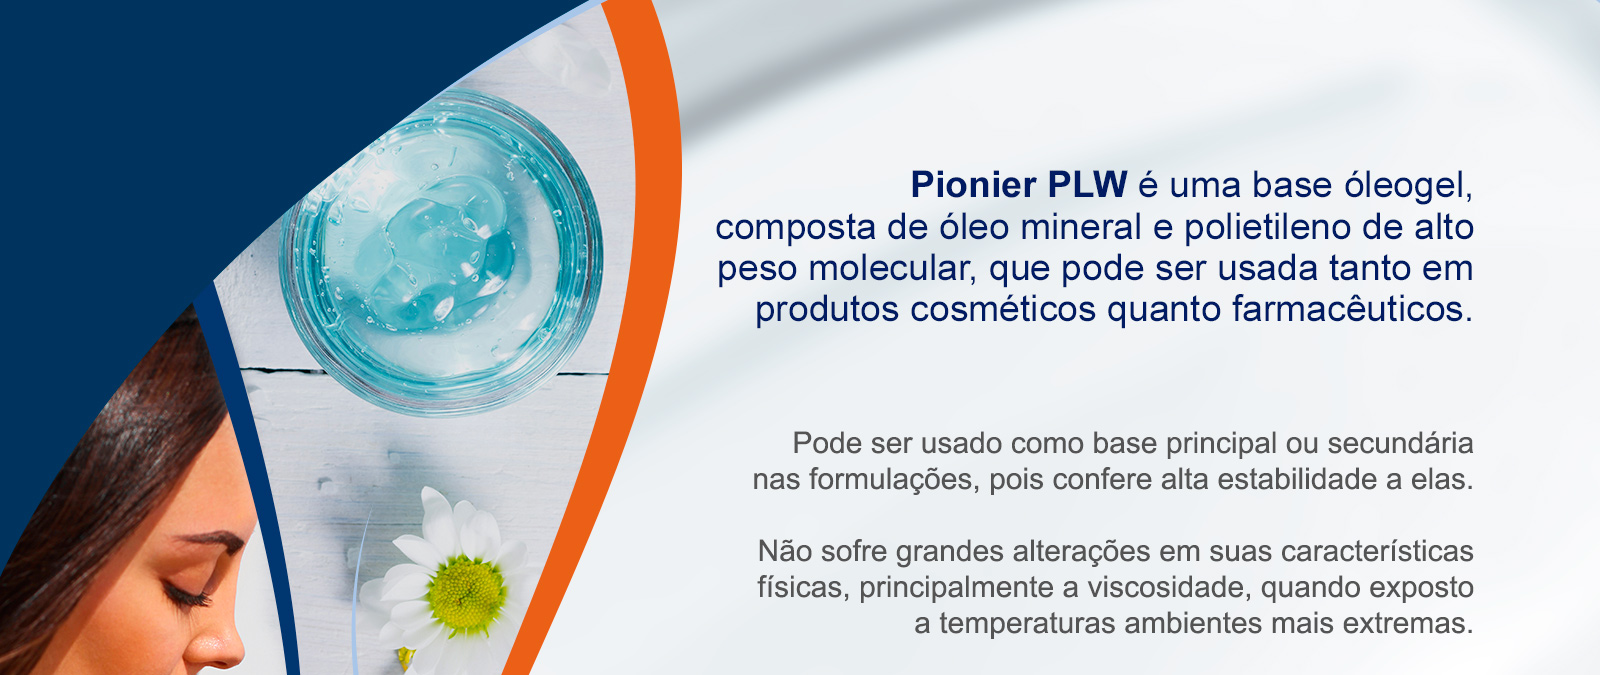 Pionier PLW é uma base óleogel, composta de óleo mineral e polietileno de alto peso molecular, que pode ser usada tanto em produtos cosméticos quanto farmacêuticos. 